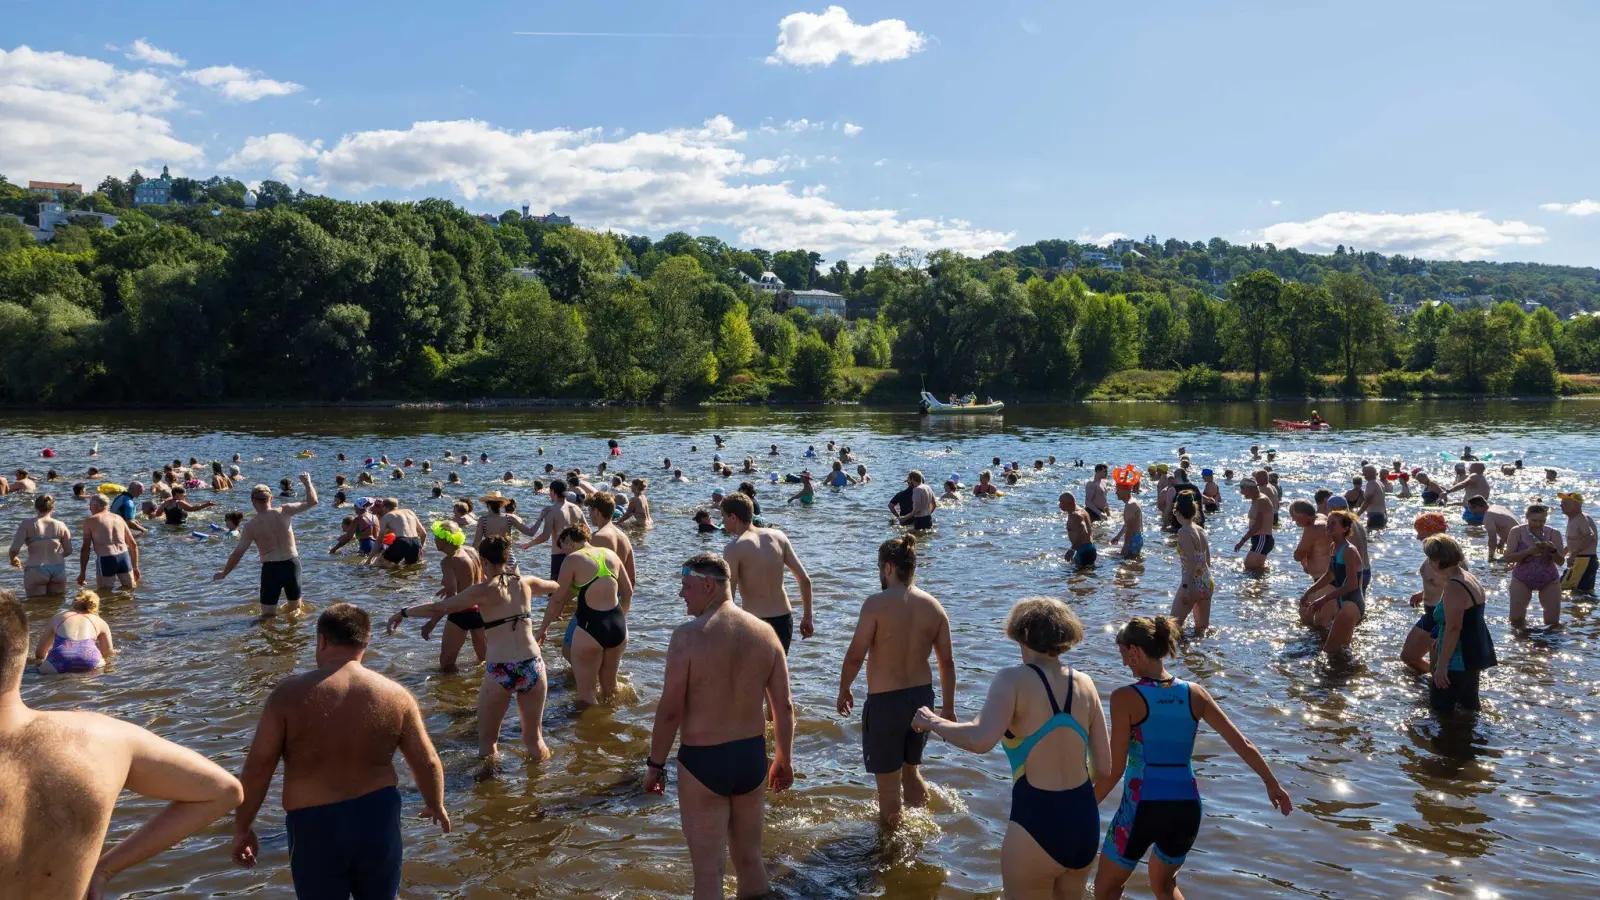 Mehr als 1800 Menschen wollten die rund 3,5 Kilometer lange Strecke schwimmen. (Foto: Daniel Schäfer/dpa)